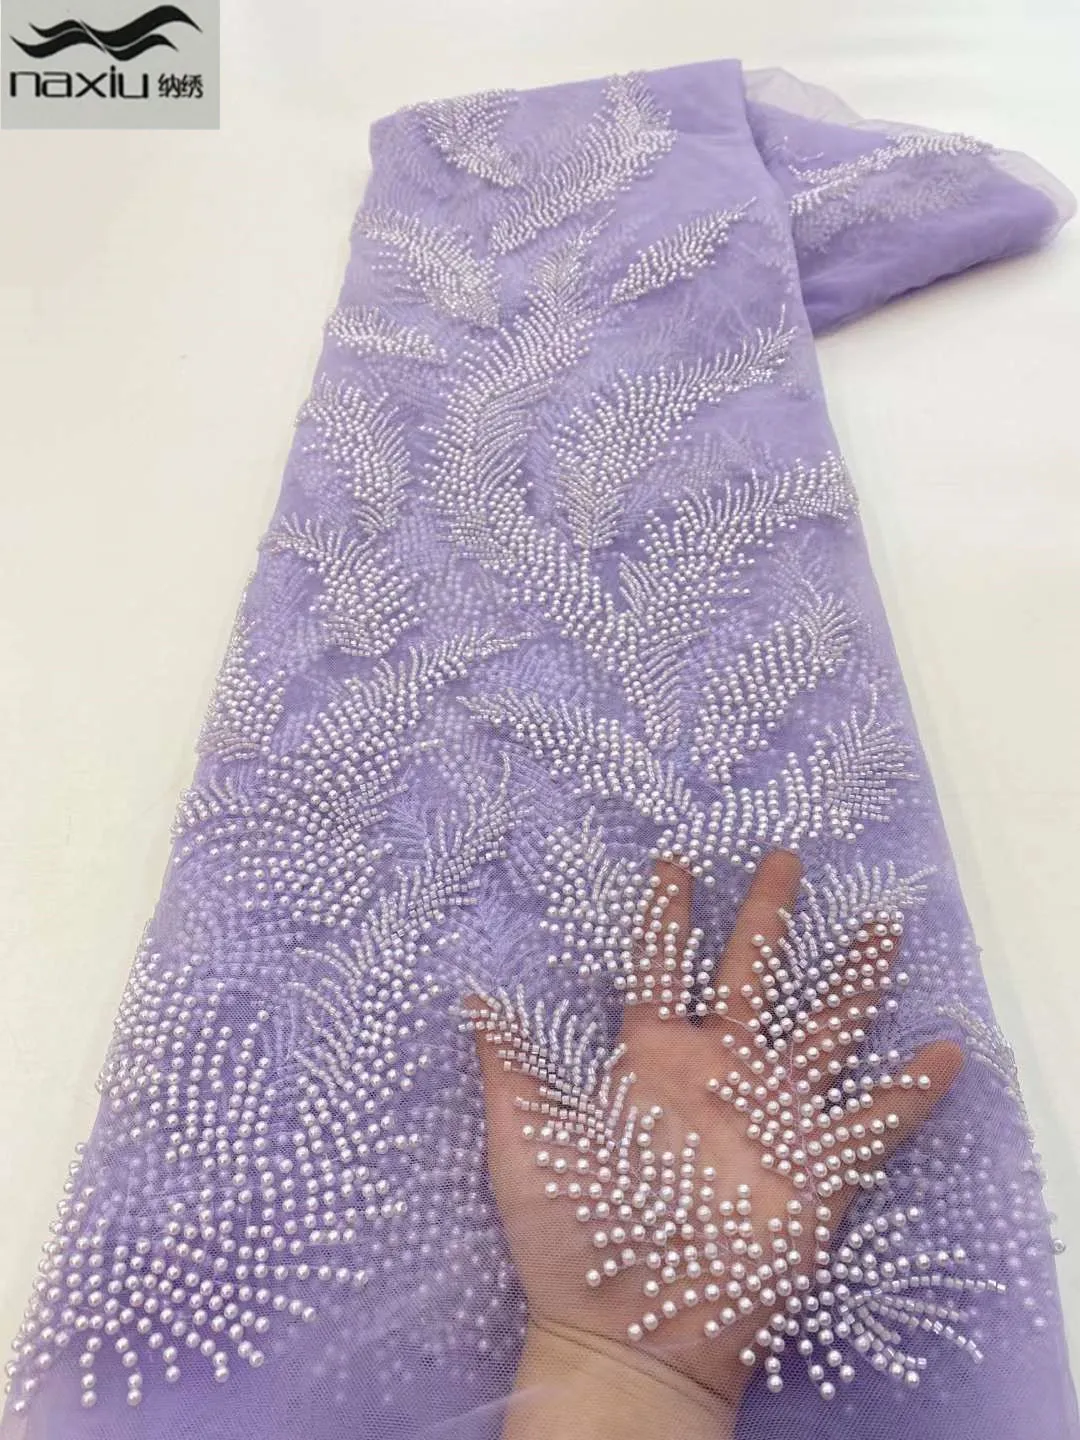 

Madison, африканская 3D кружевная ткань для жениха с блестками в нигерийском стиле для свадебного платья, 5 ярдов, французское кружево